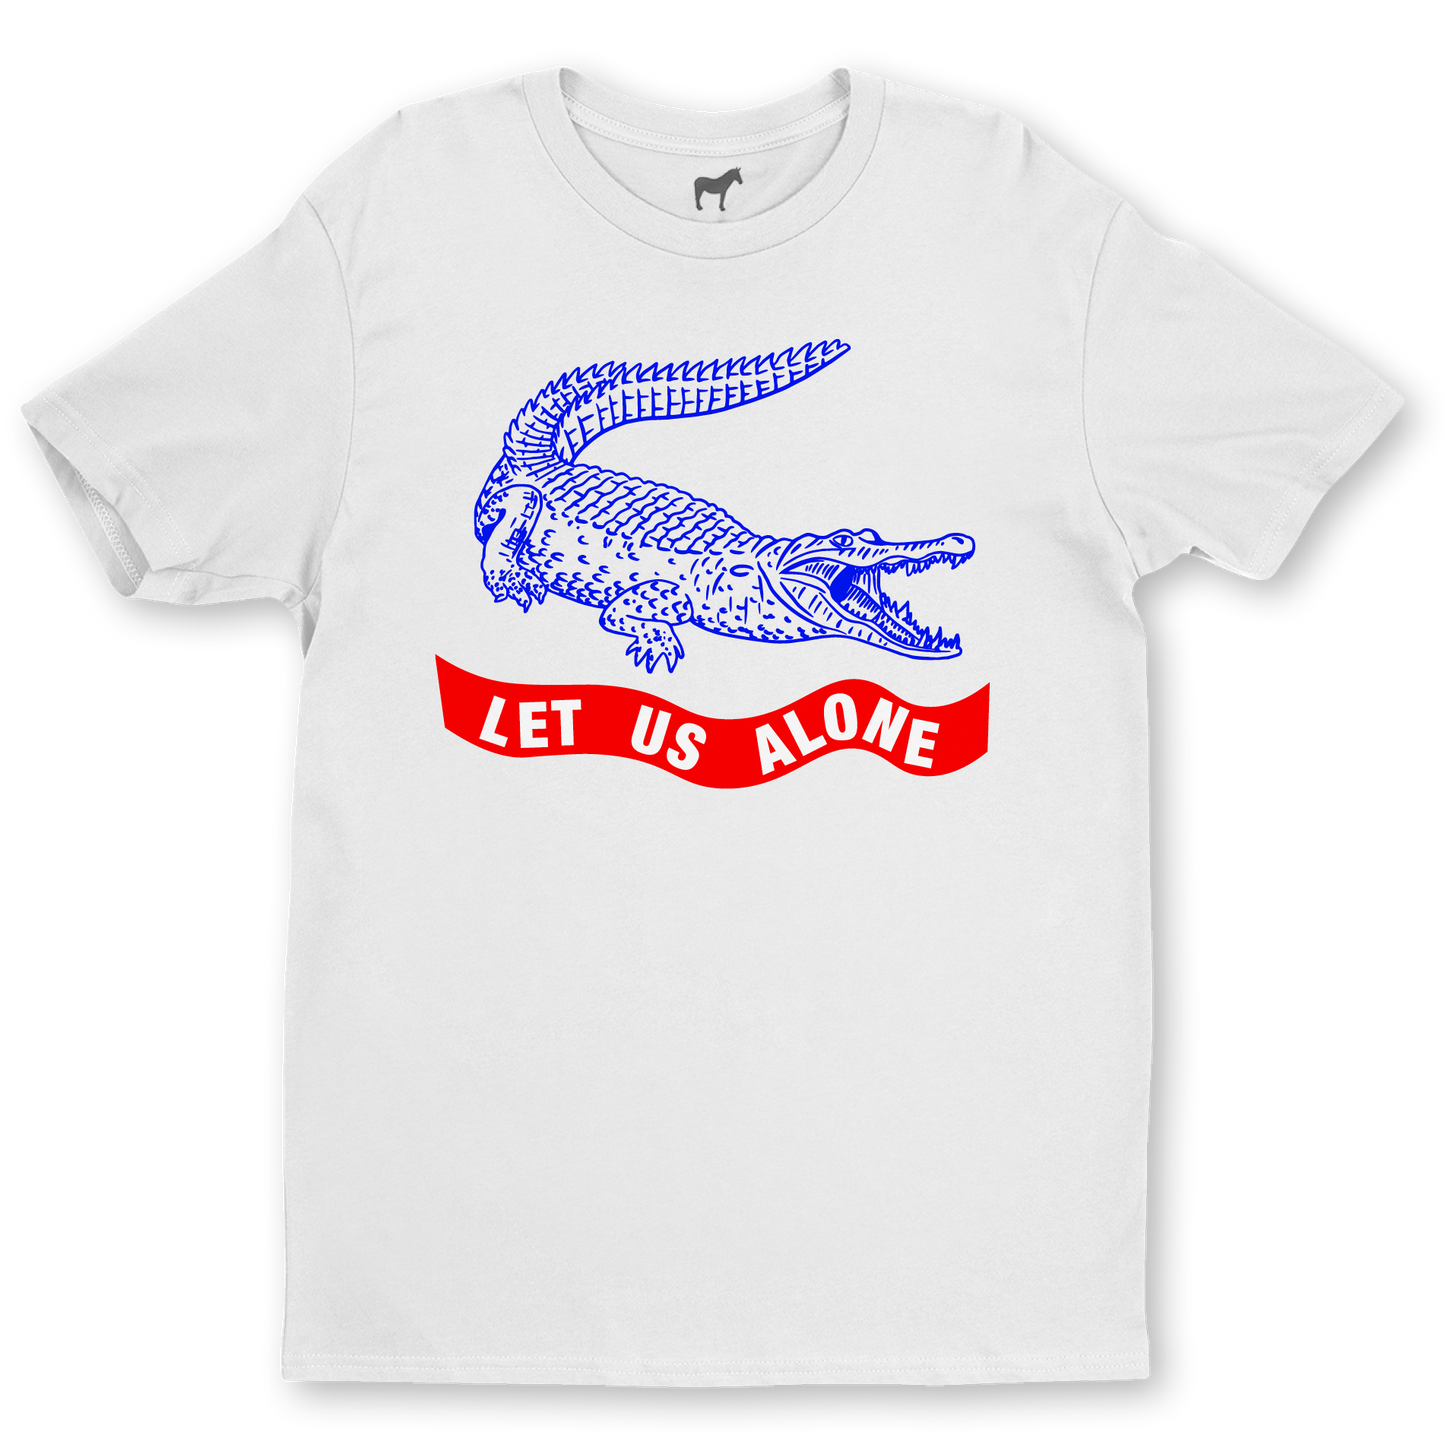 "Let us alone" Florida Alligator